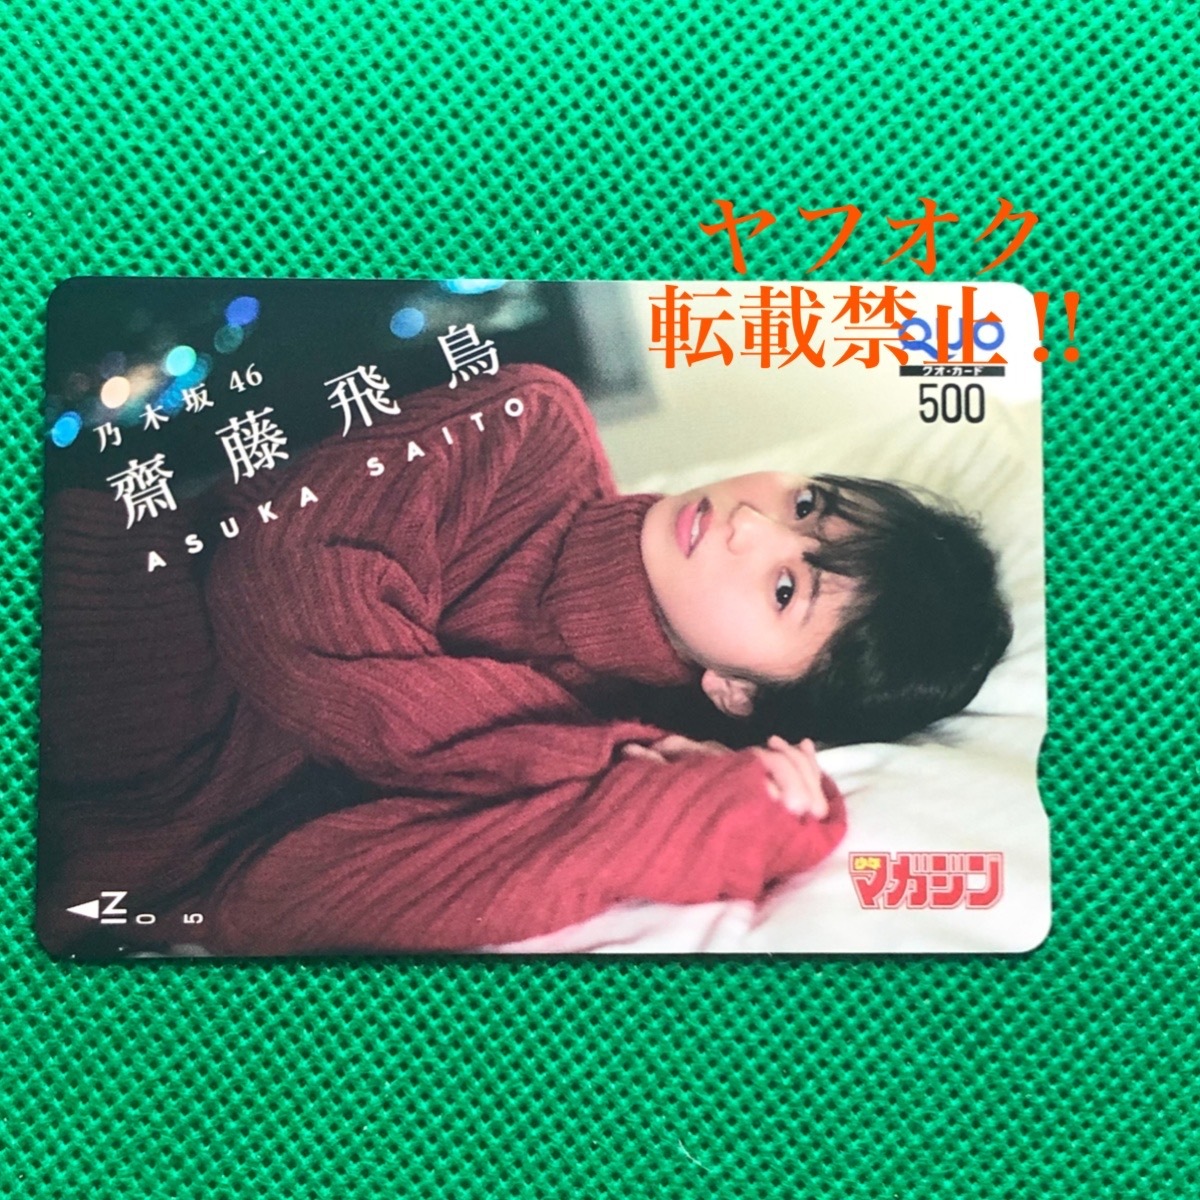 . глициния . птица . pre Nogizaka 46 QUO карта Shonen Magazine 2020 год No.25 заявление человек . выбор 50 название koka данный выбор приз QUO card . выбор подарок 